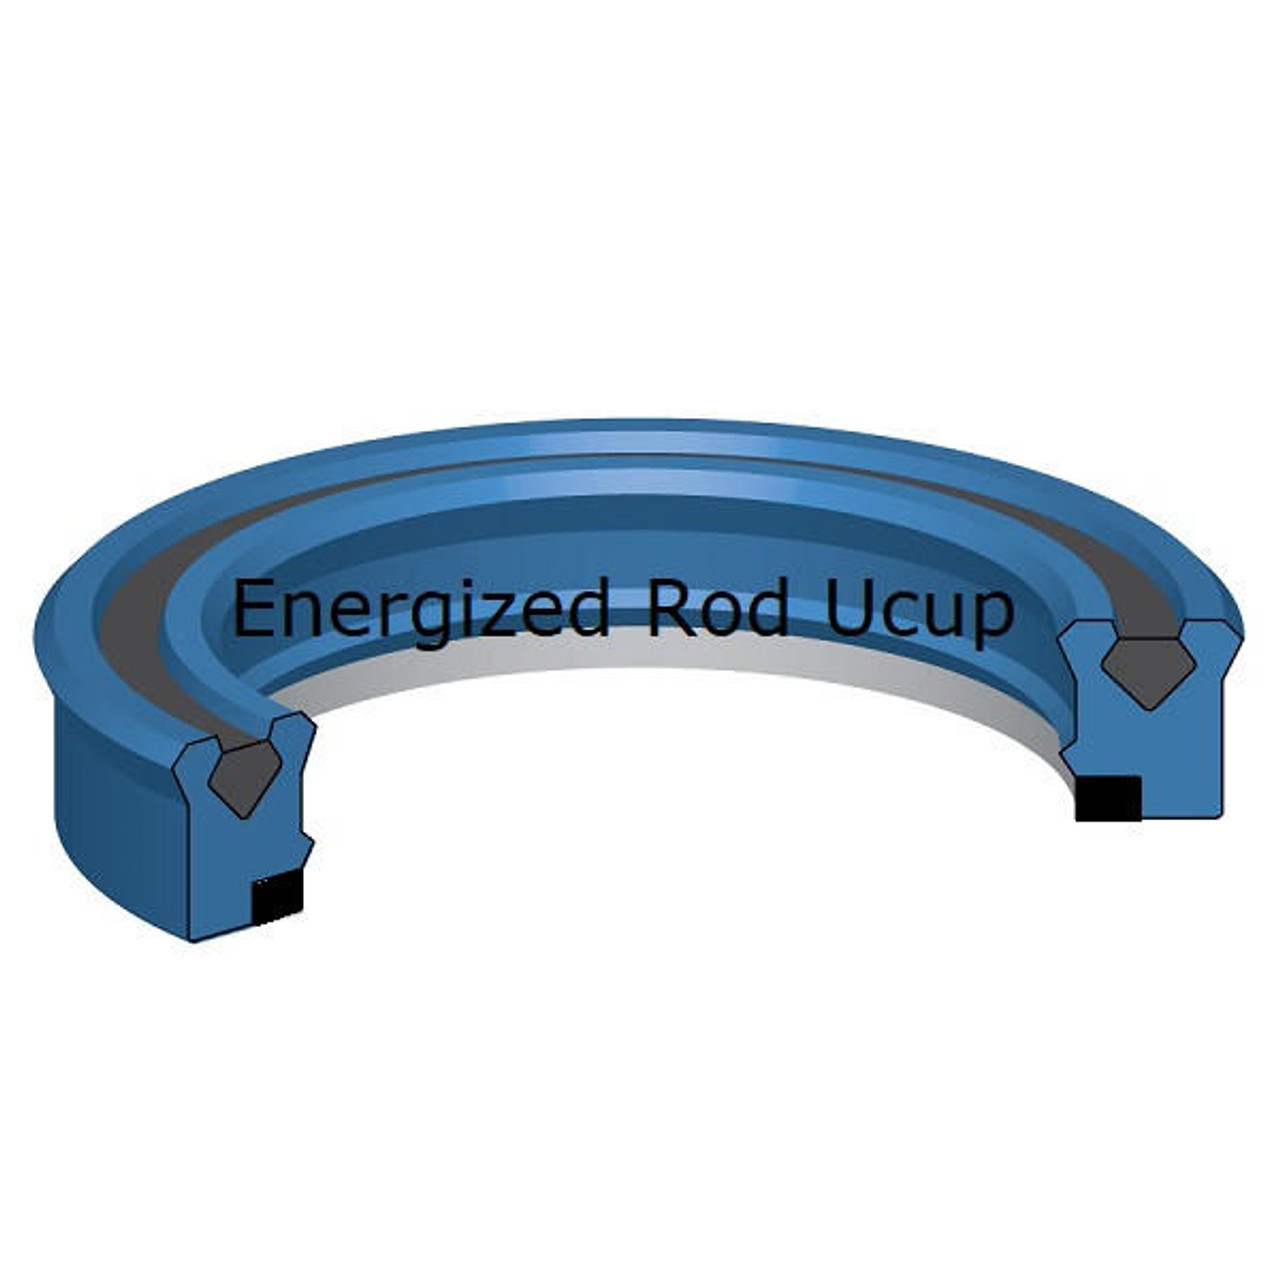 Energized Rod U cup 80mm ID x 95mm OD x 11.4mm Seal  10,000 PSI